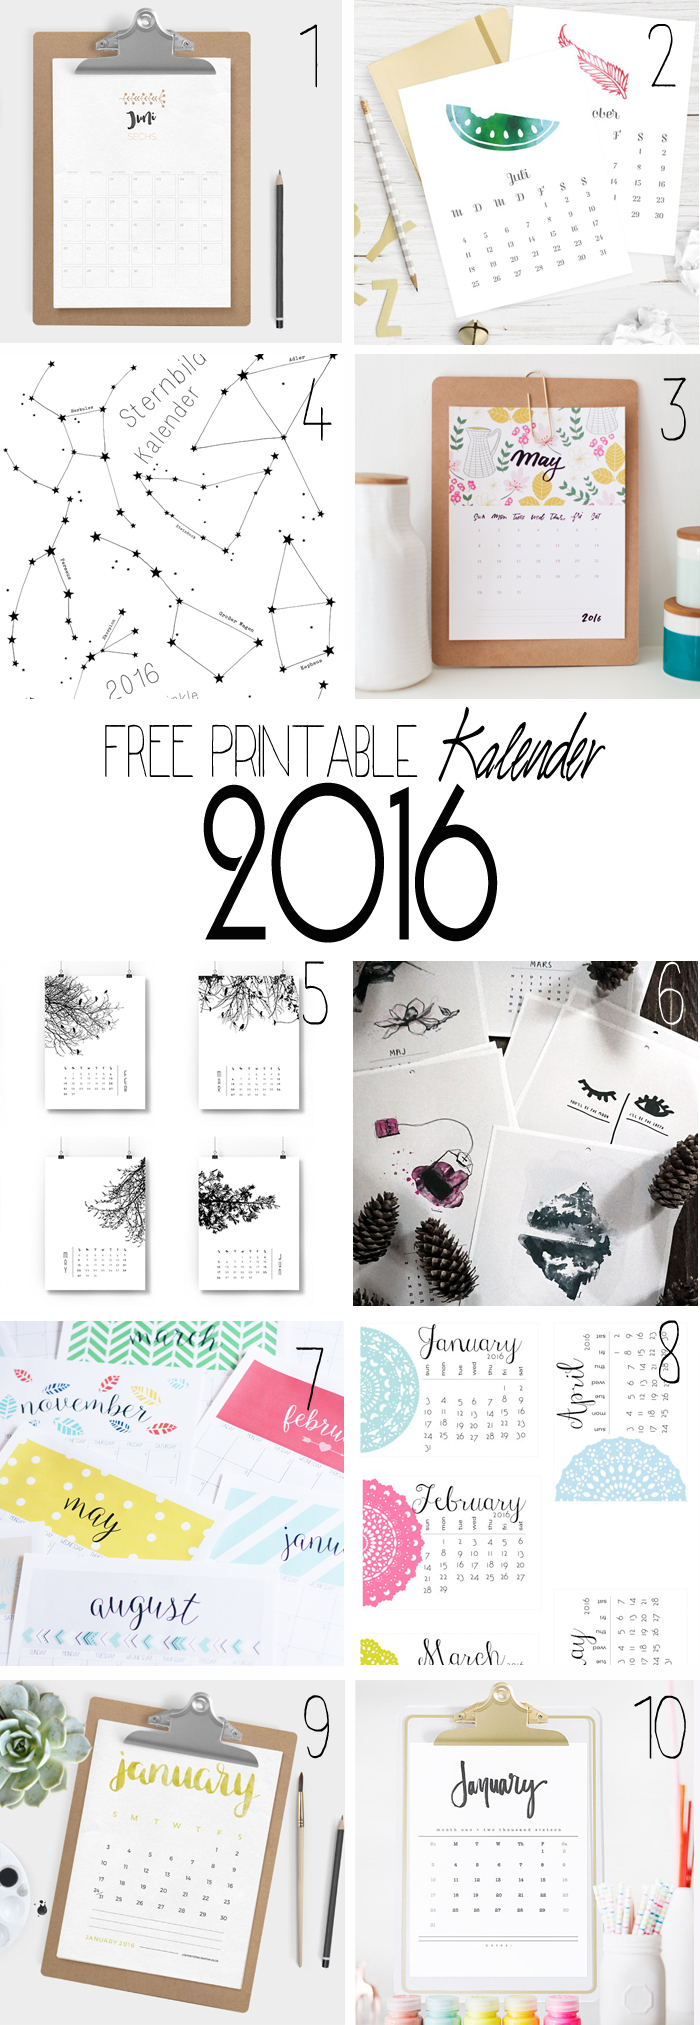 Free_Printable_Kalender_2016